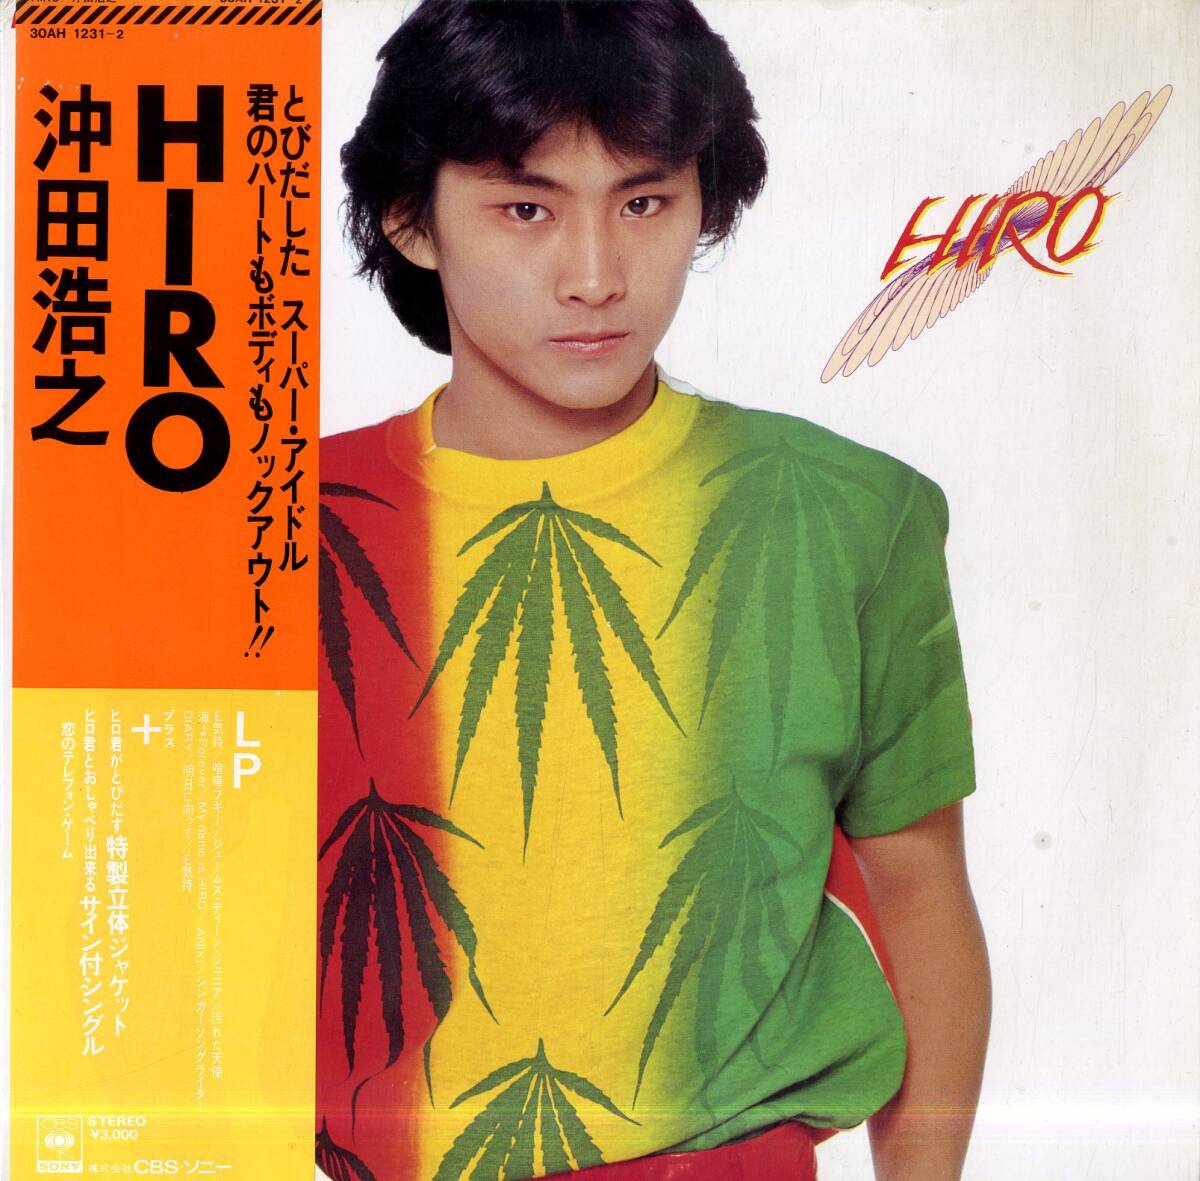 A00580327/LP/沖田浩之「Hiro (1981年・30AH-1231～2)」_画像1